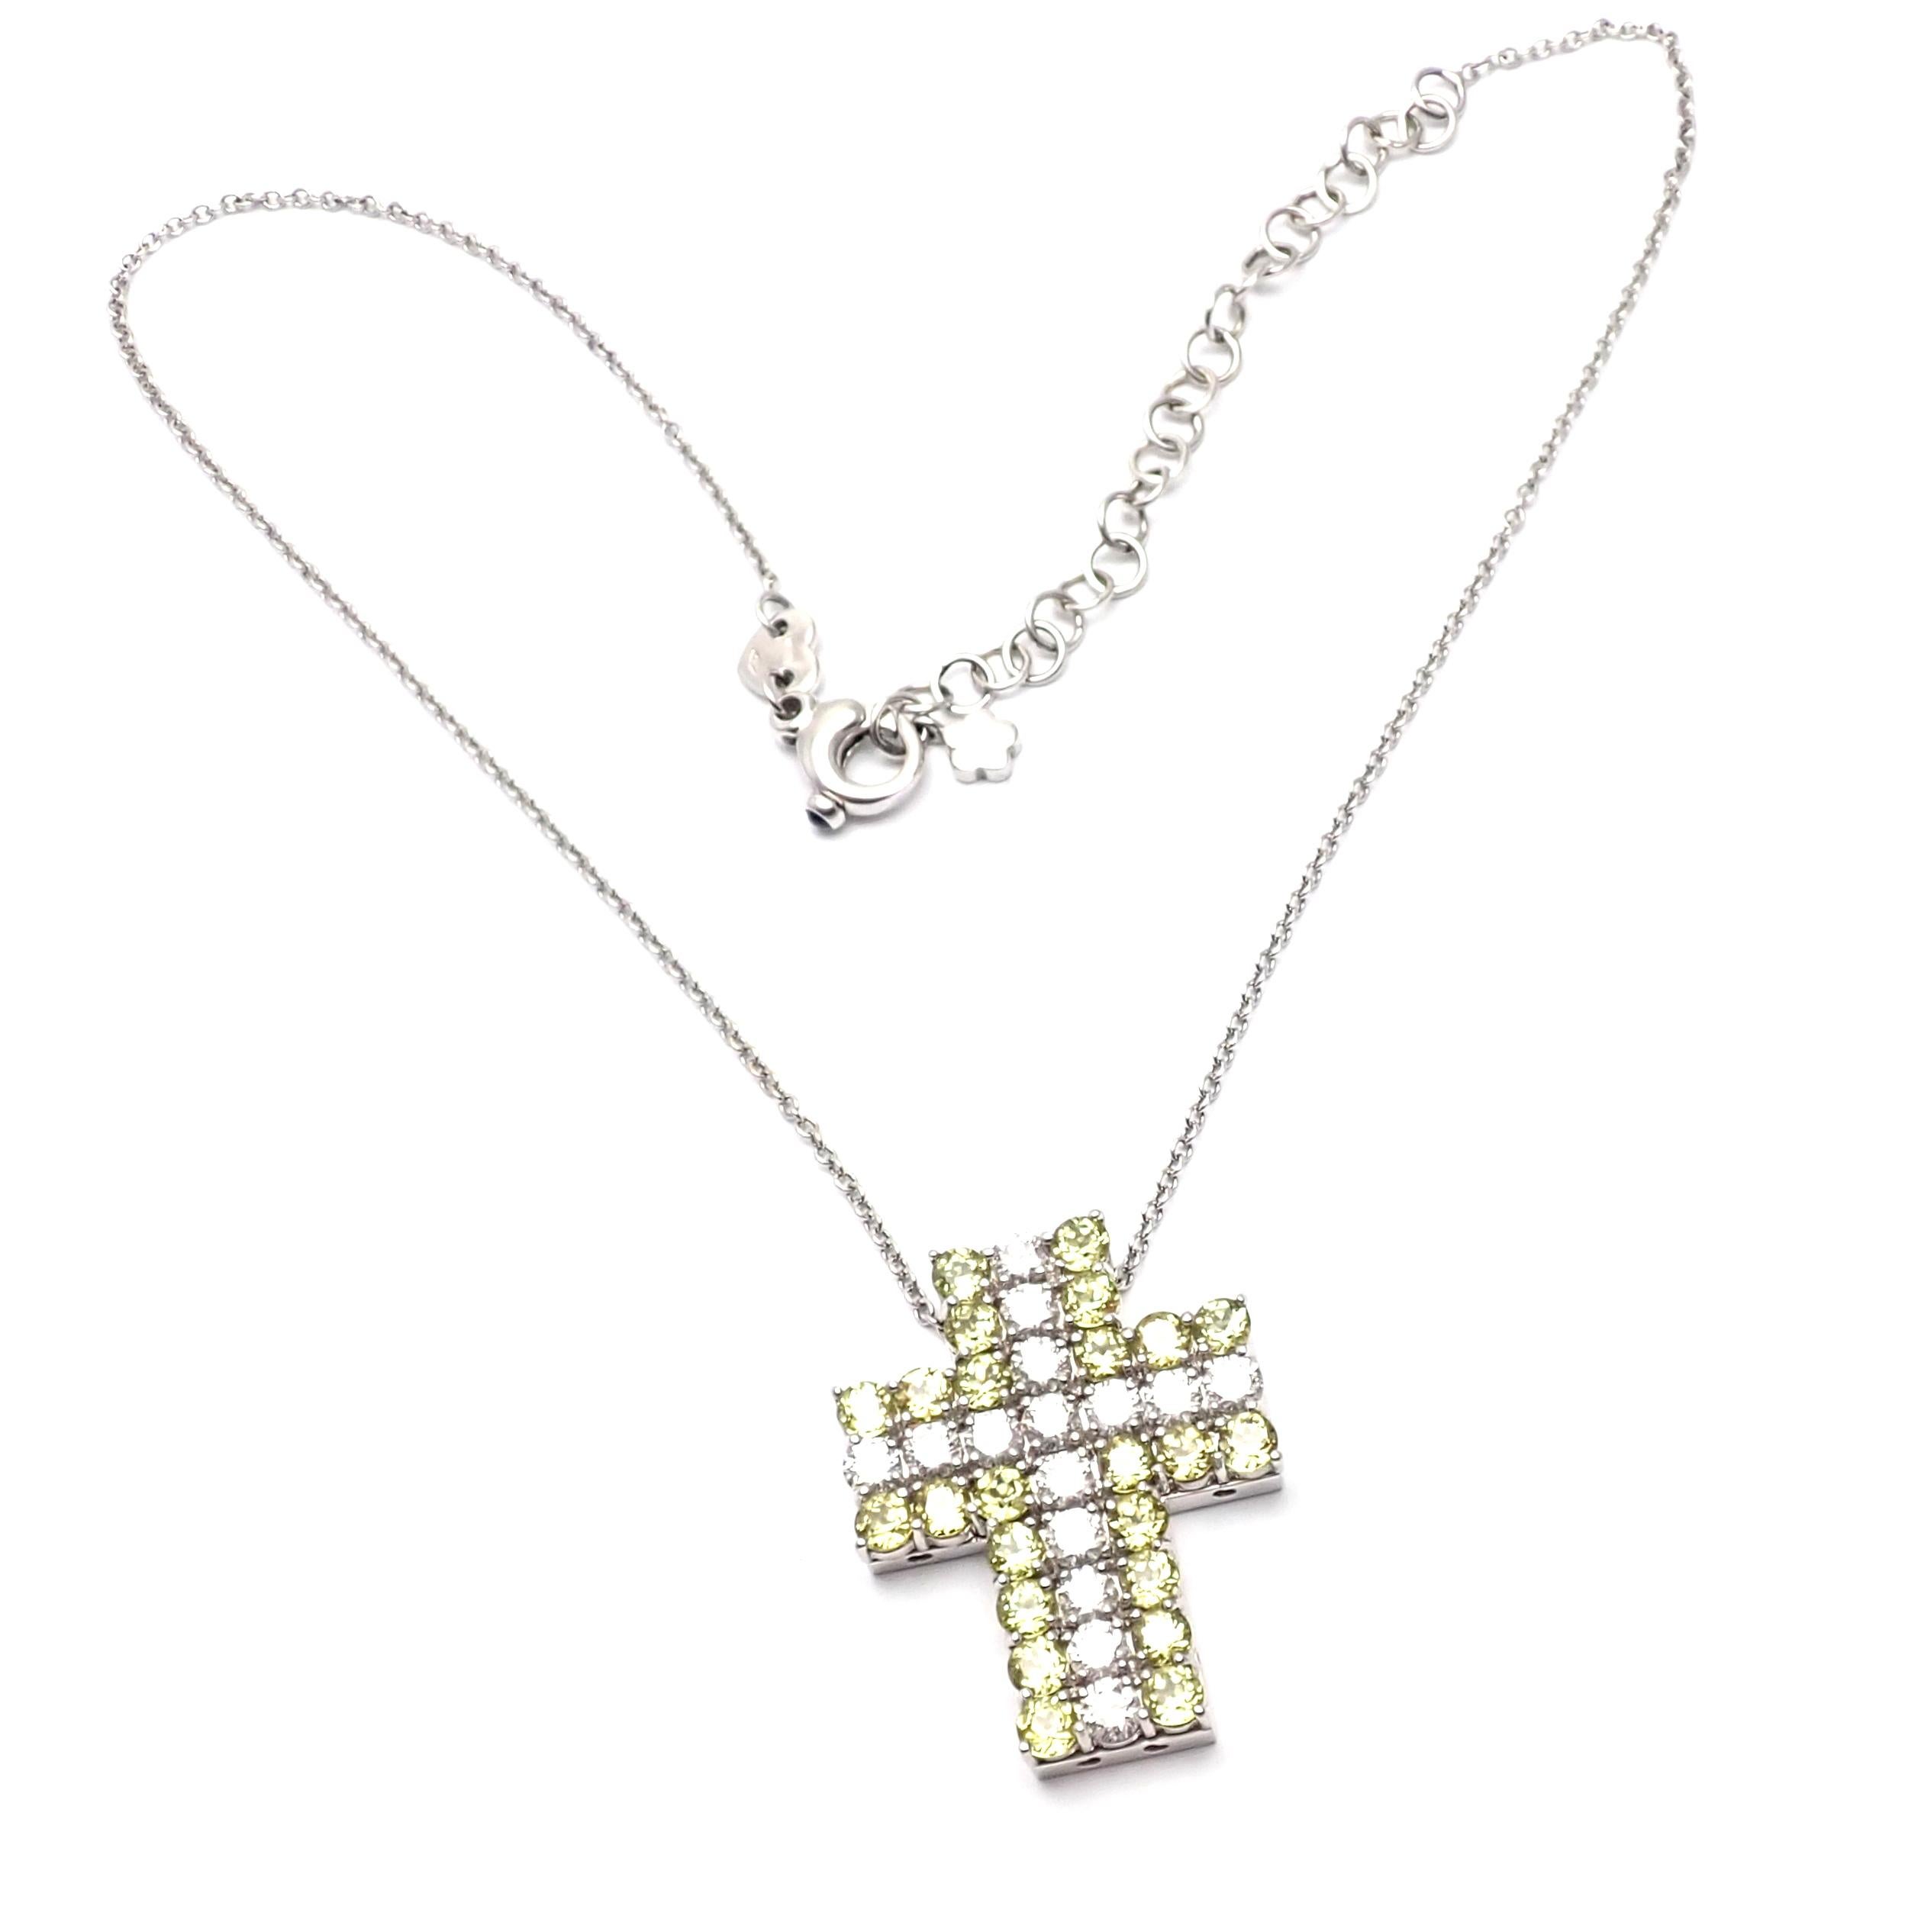 collier pendentif croix en or blanc 18k avec diamant et péridot par Pasquale Bruni.  
Avec 15 diamants ronds de taille brillant d'un poids total d'environ 2,6 ct 
26 Péridots
Ce collier est livré avec une boîte et un certificat.   
Détails : 